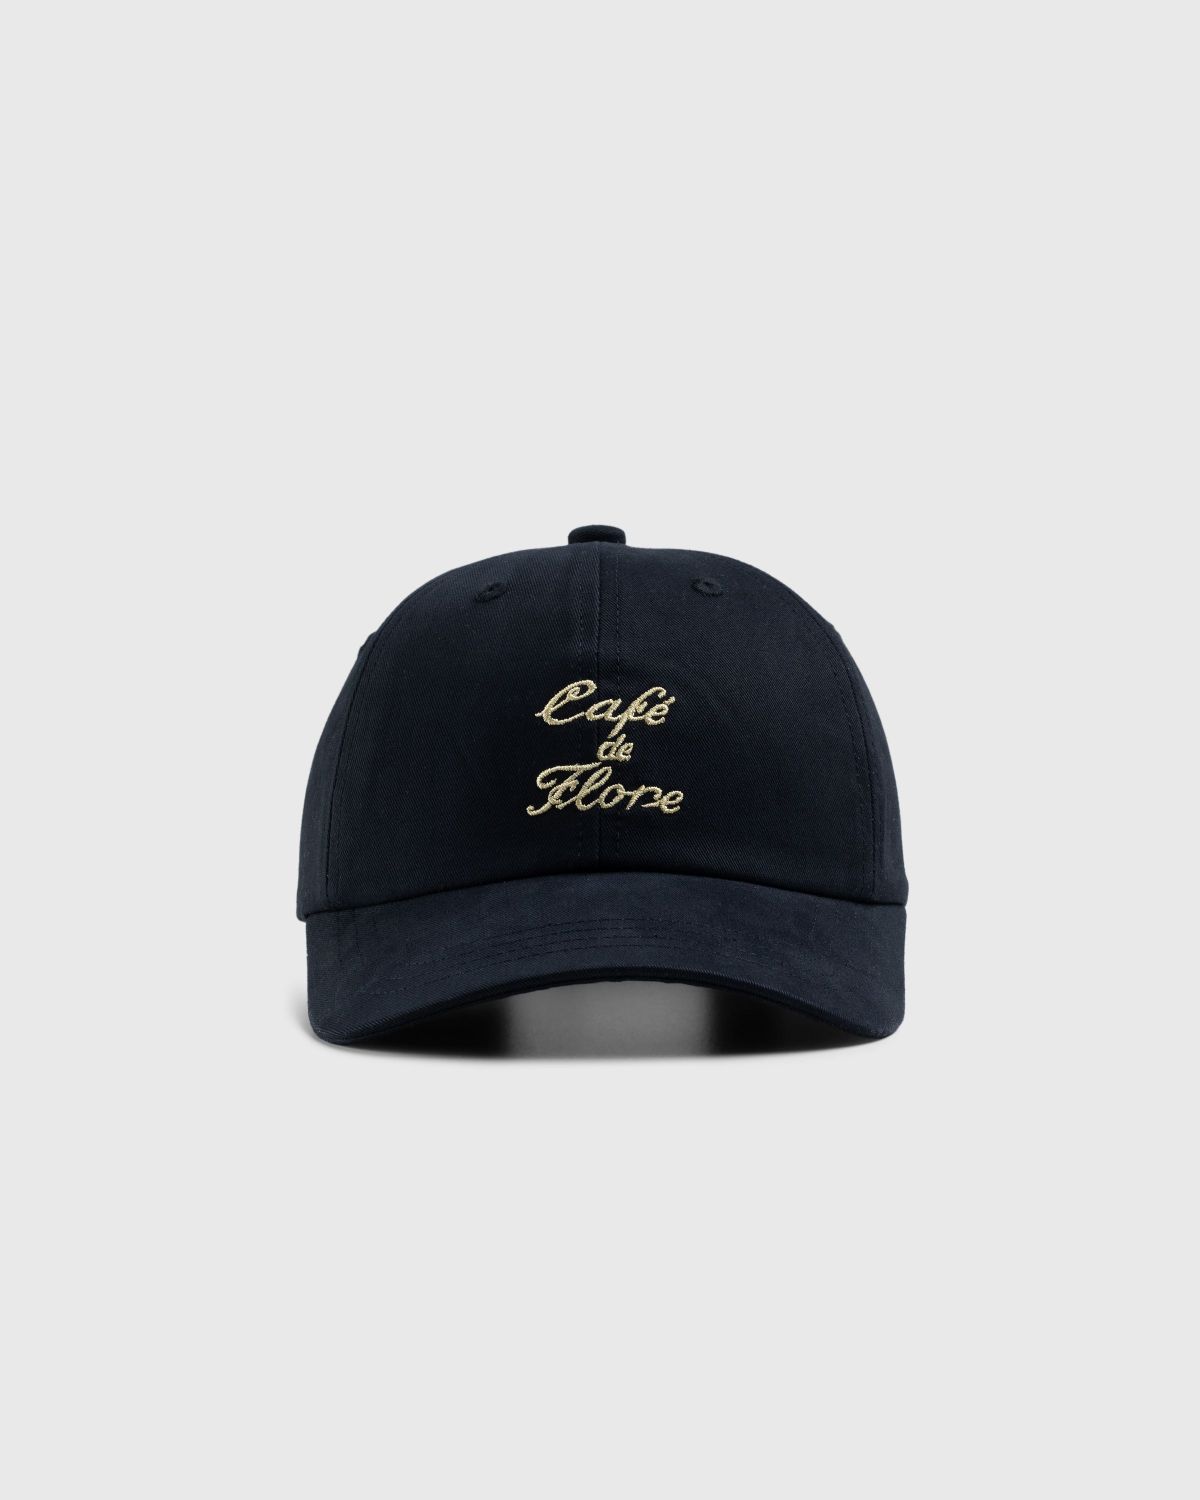 Café de Flore x Highsnobiety – Cap Black - Hats - Black - Image 3